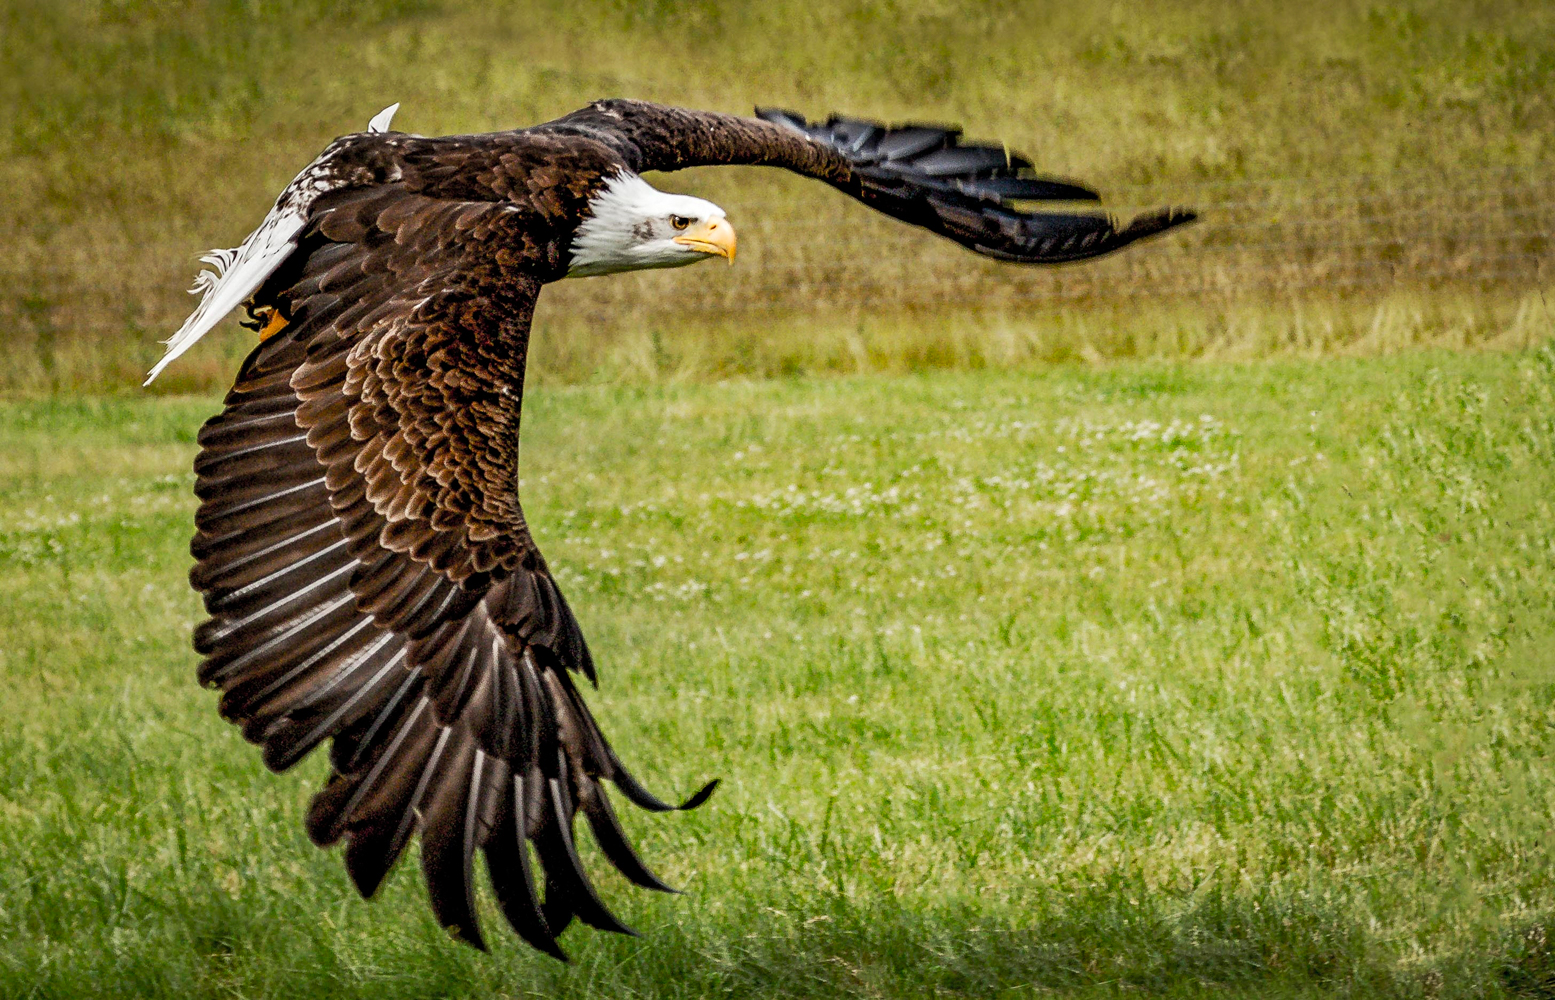 Bald Eagle - 